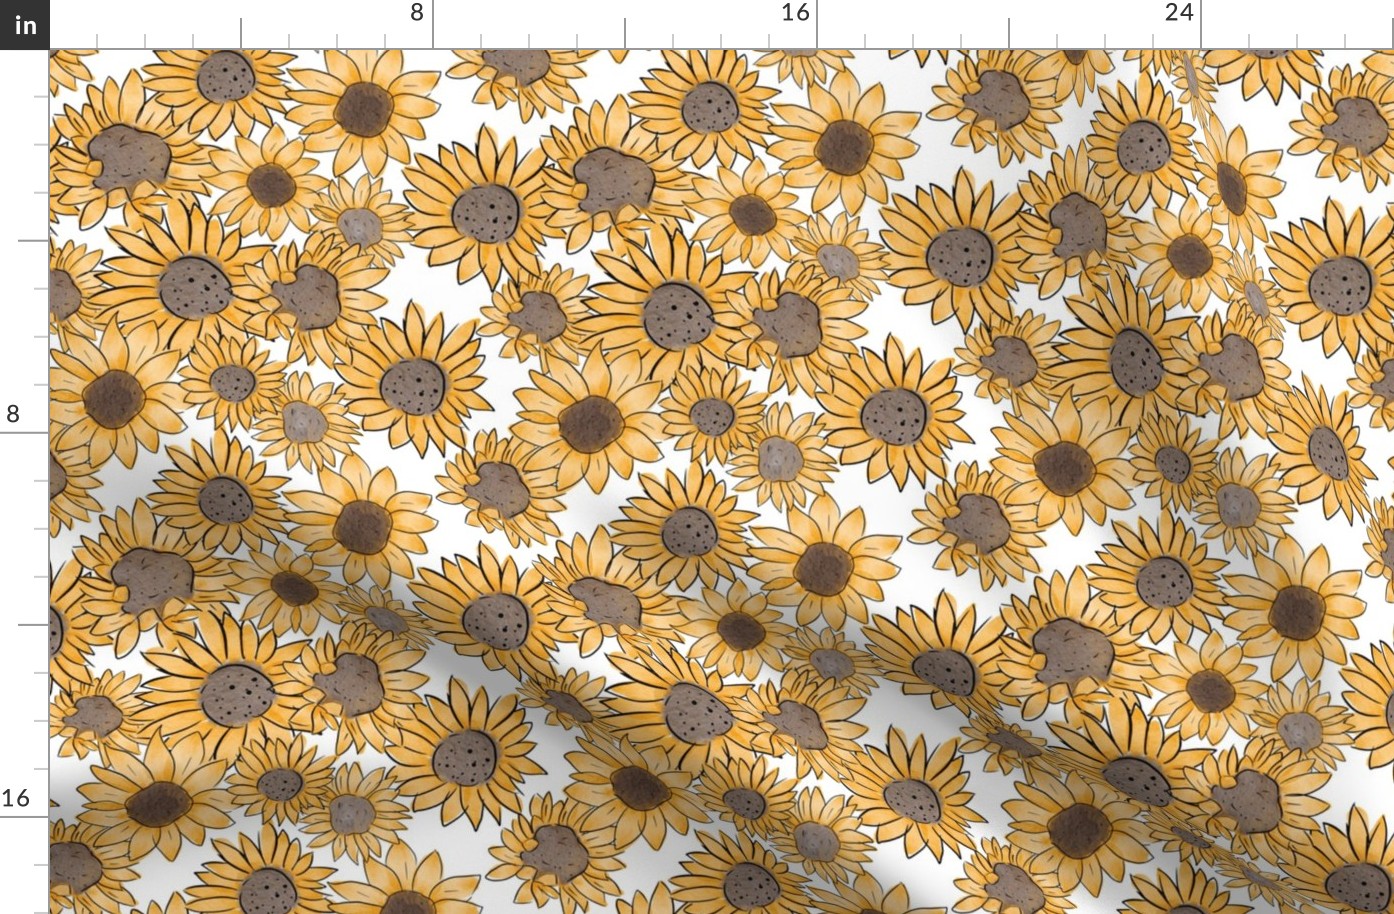 Sunflowers [10]